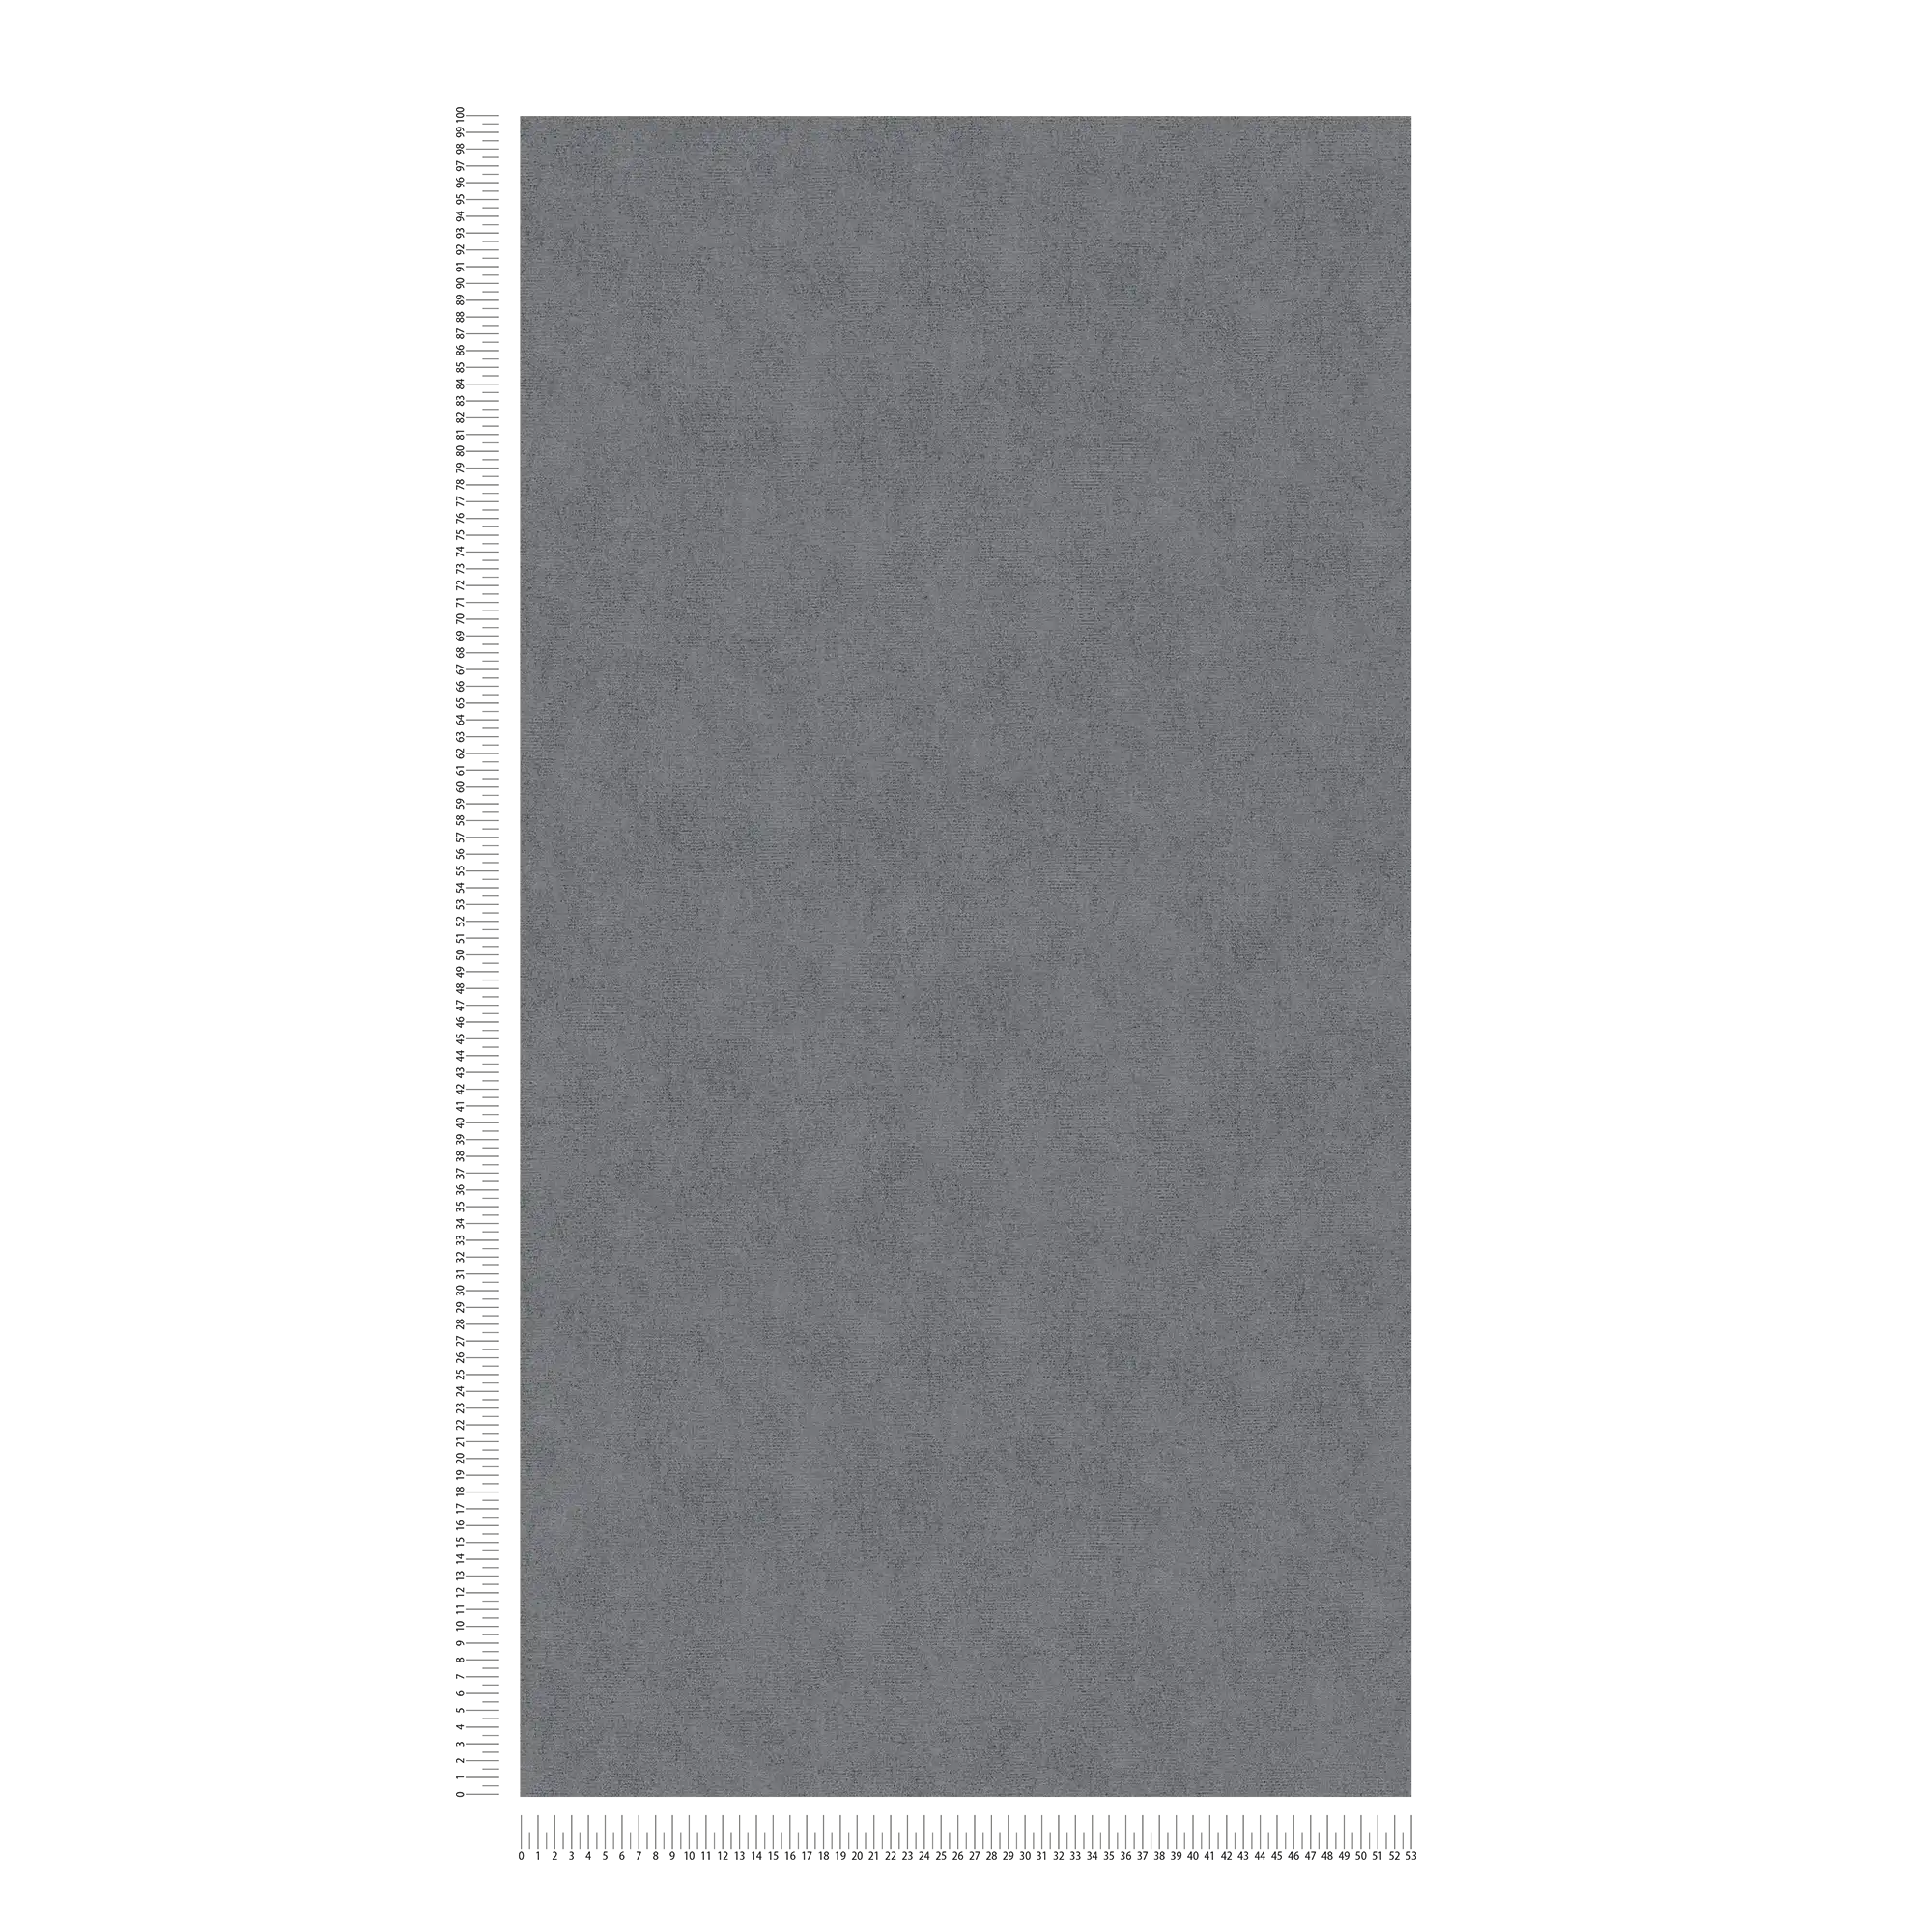             Papel pintado tinta unicat gris oscuro moteado con efecto brillo - gris
        